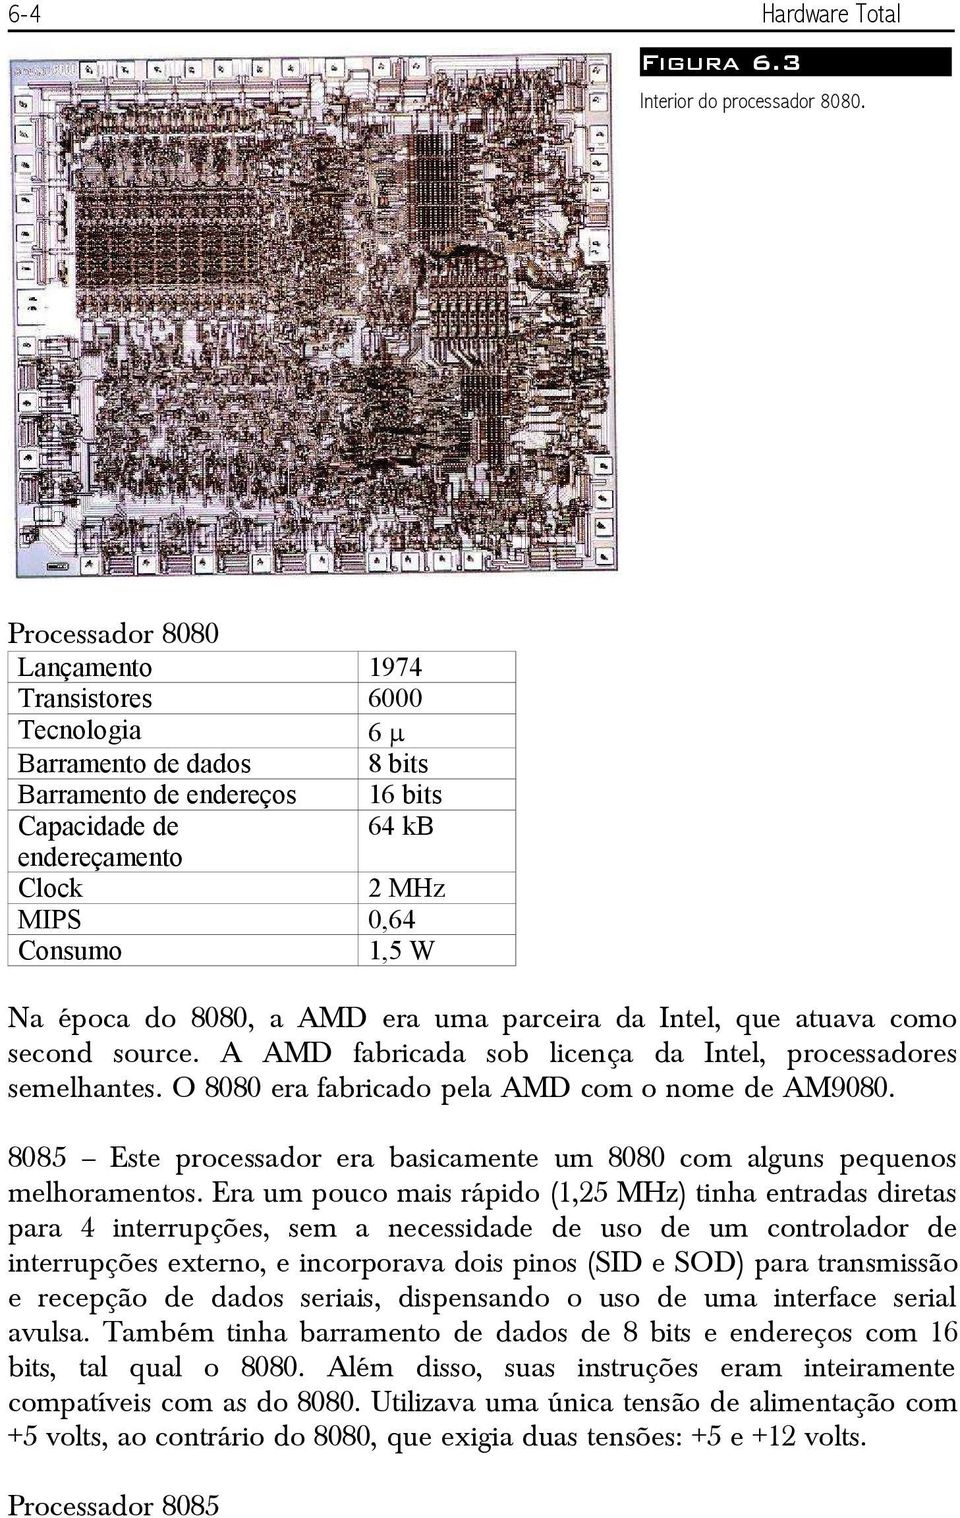 época do 8080, a AMD era uma parceira da Intel, que atuava como second source. A AMD fabricada sob licença da Intel, processadores semelhantes. O 8080 era fabricado pela AMD com o nome de AM9080.